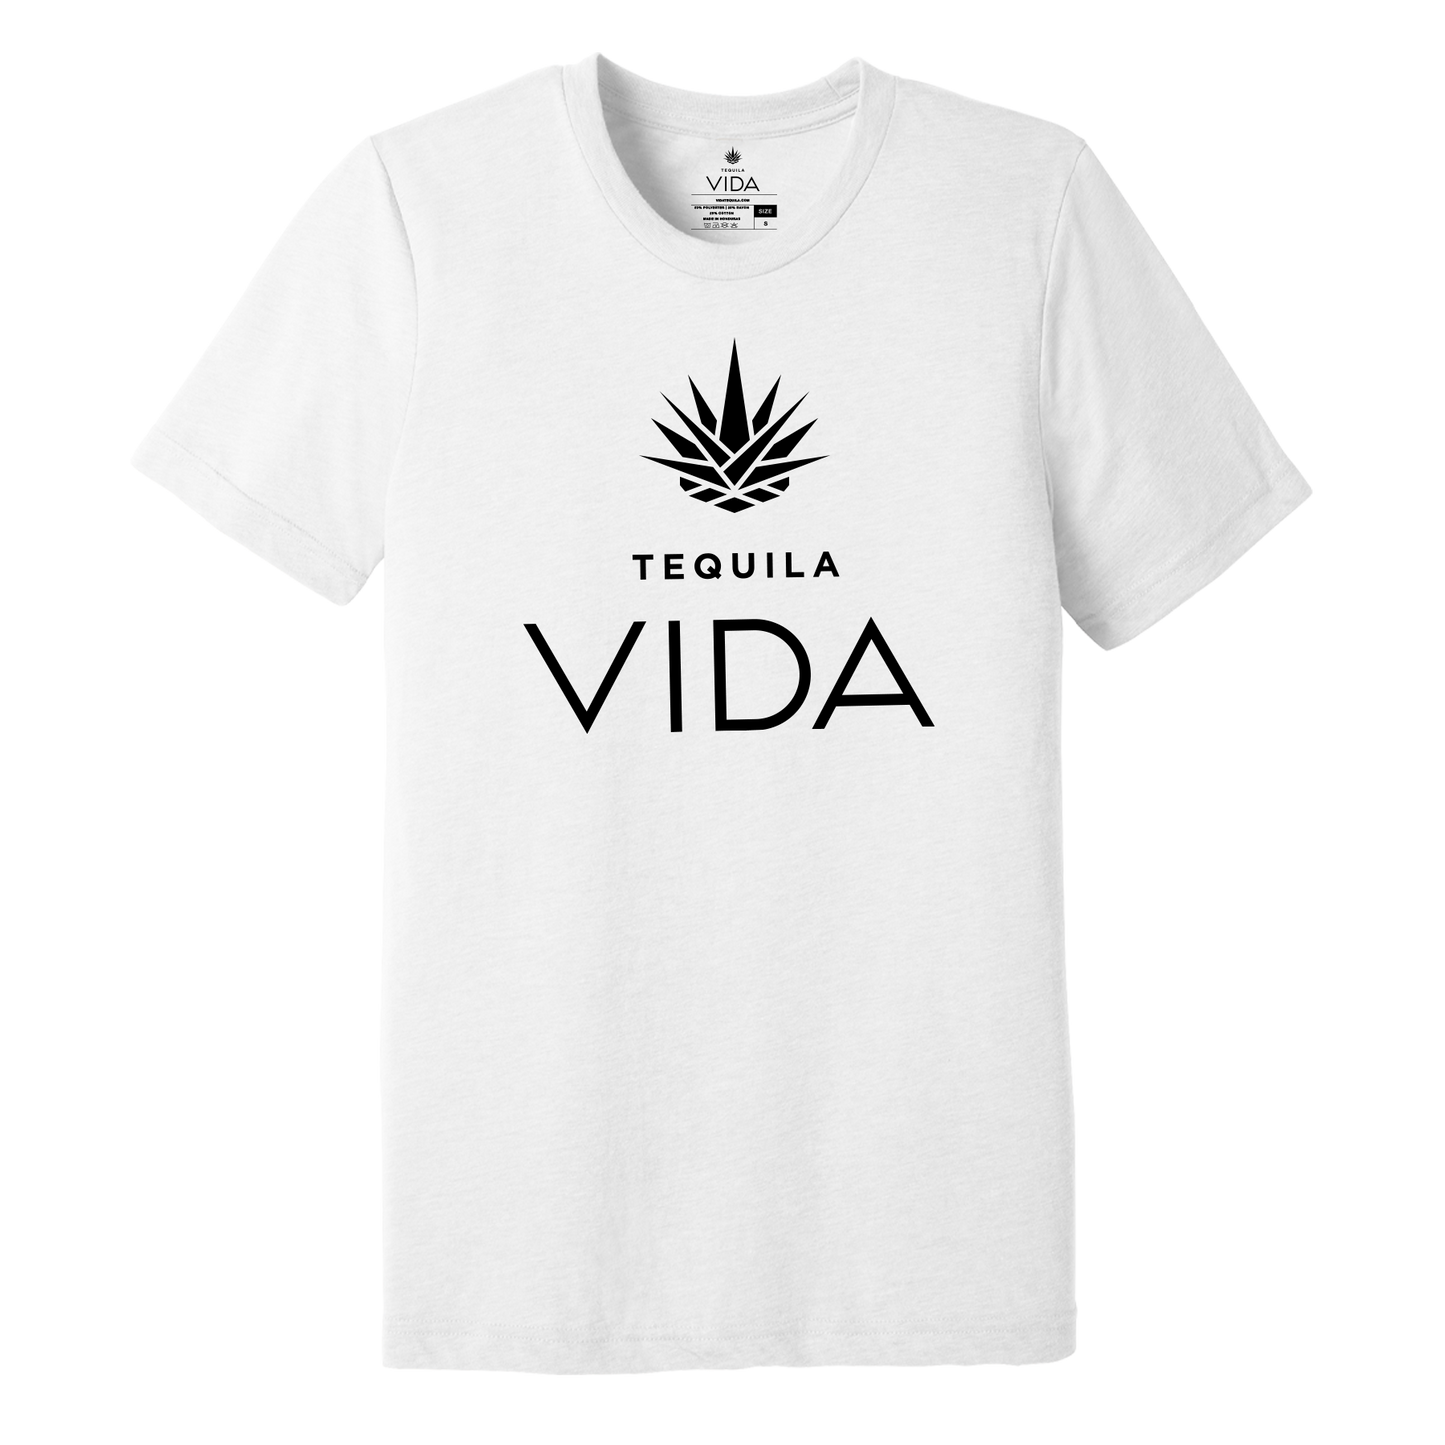 VIDA Original Logo T-Shirt